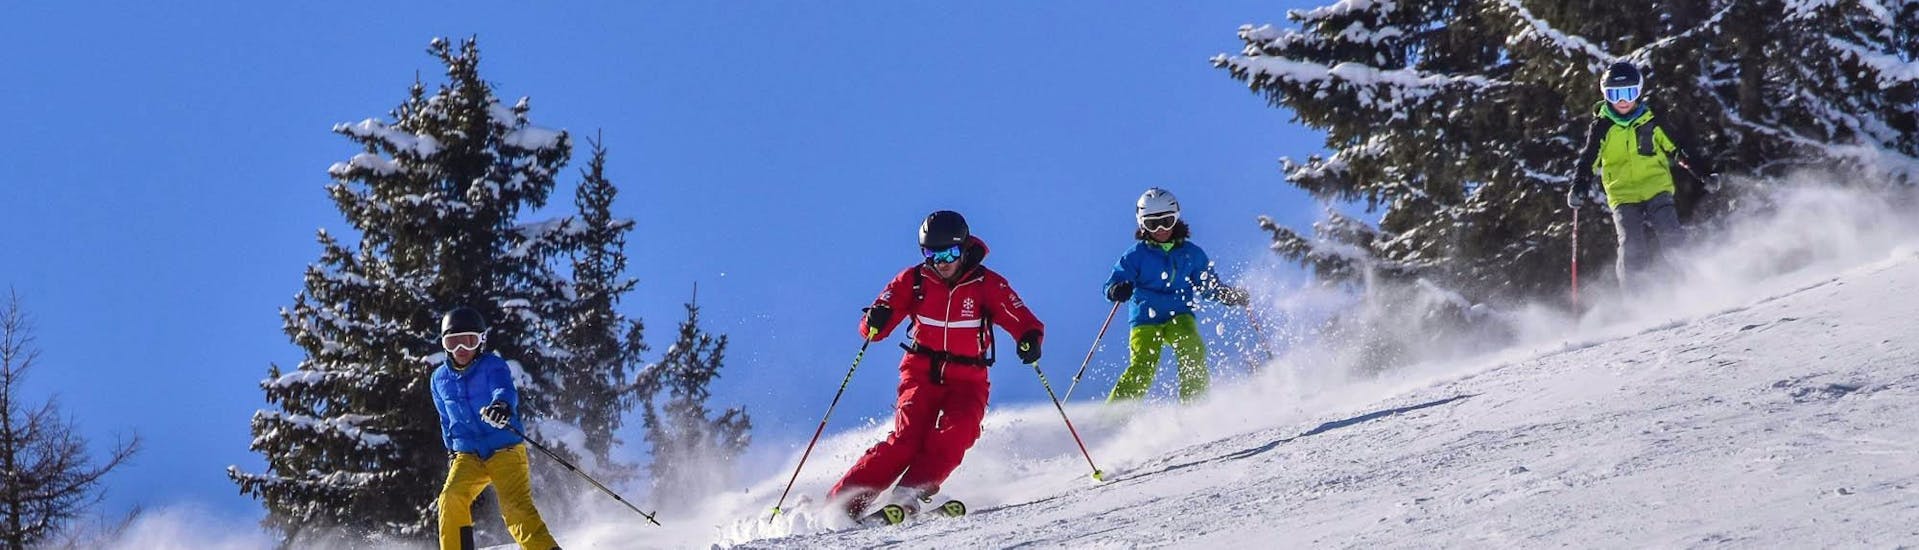 Des skieurs pendant un cours de ski pour enfants pour les skieurs expérimentés à l'école de ski de Jochberg.